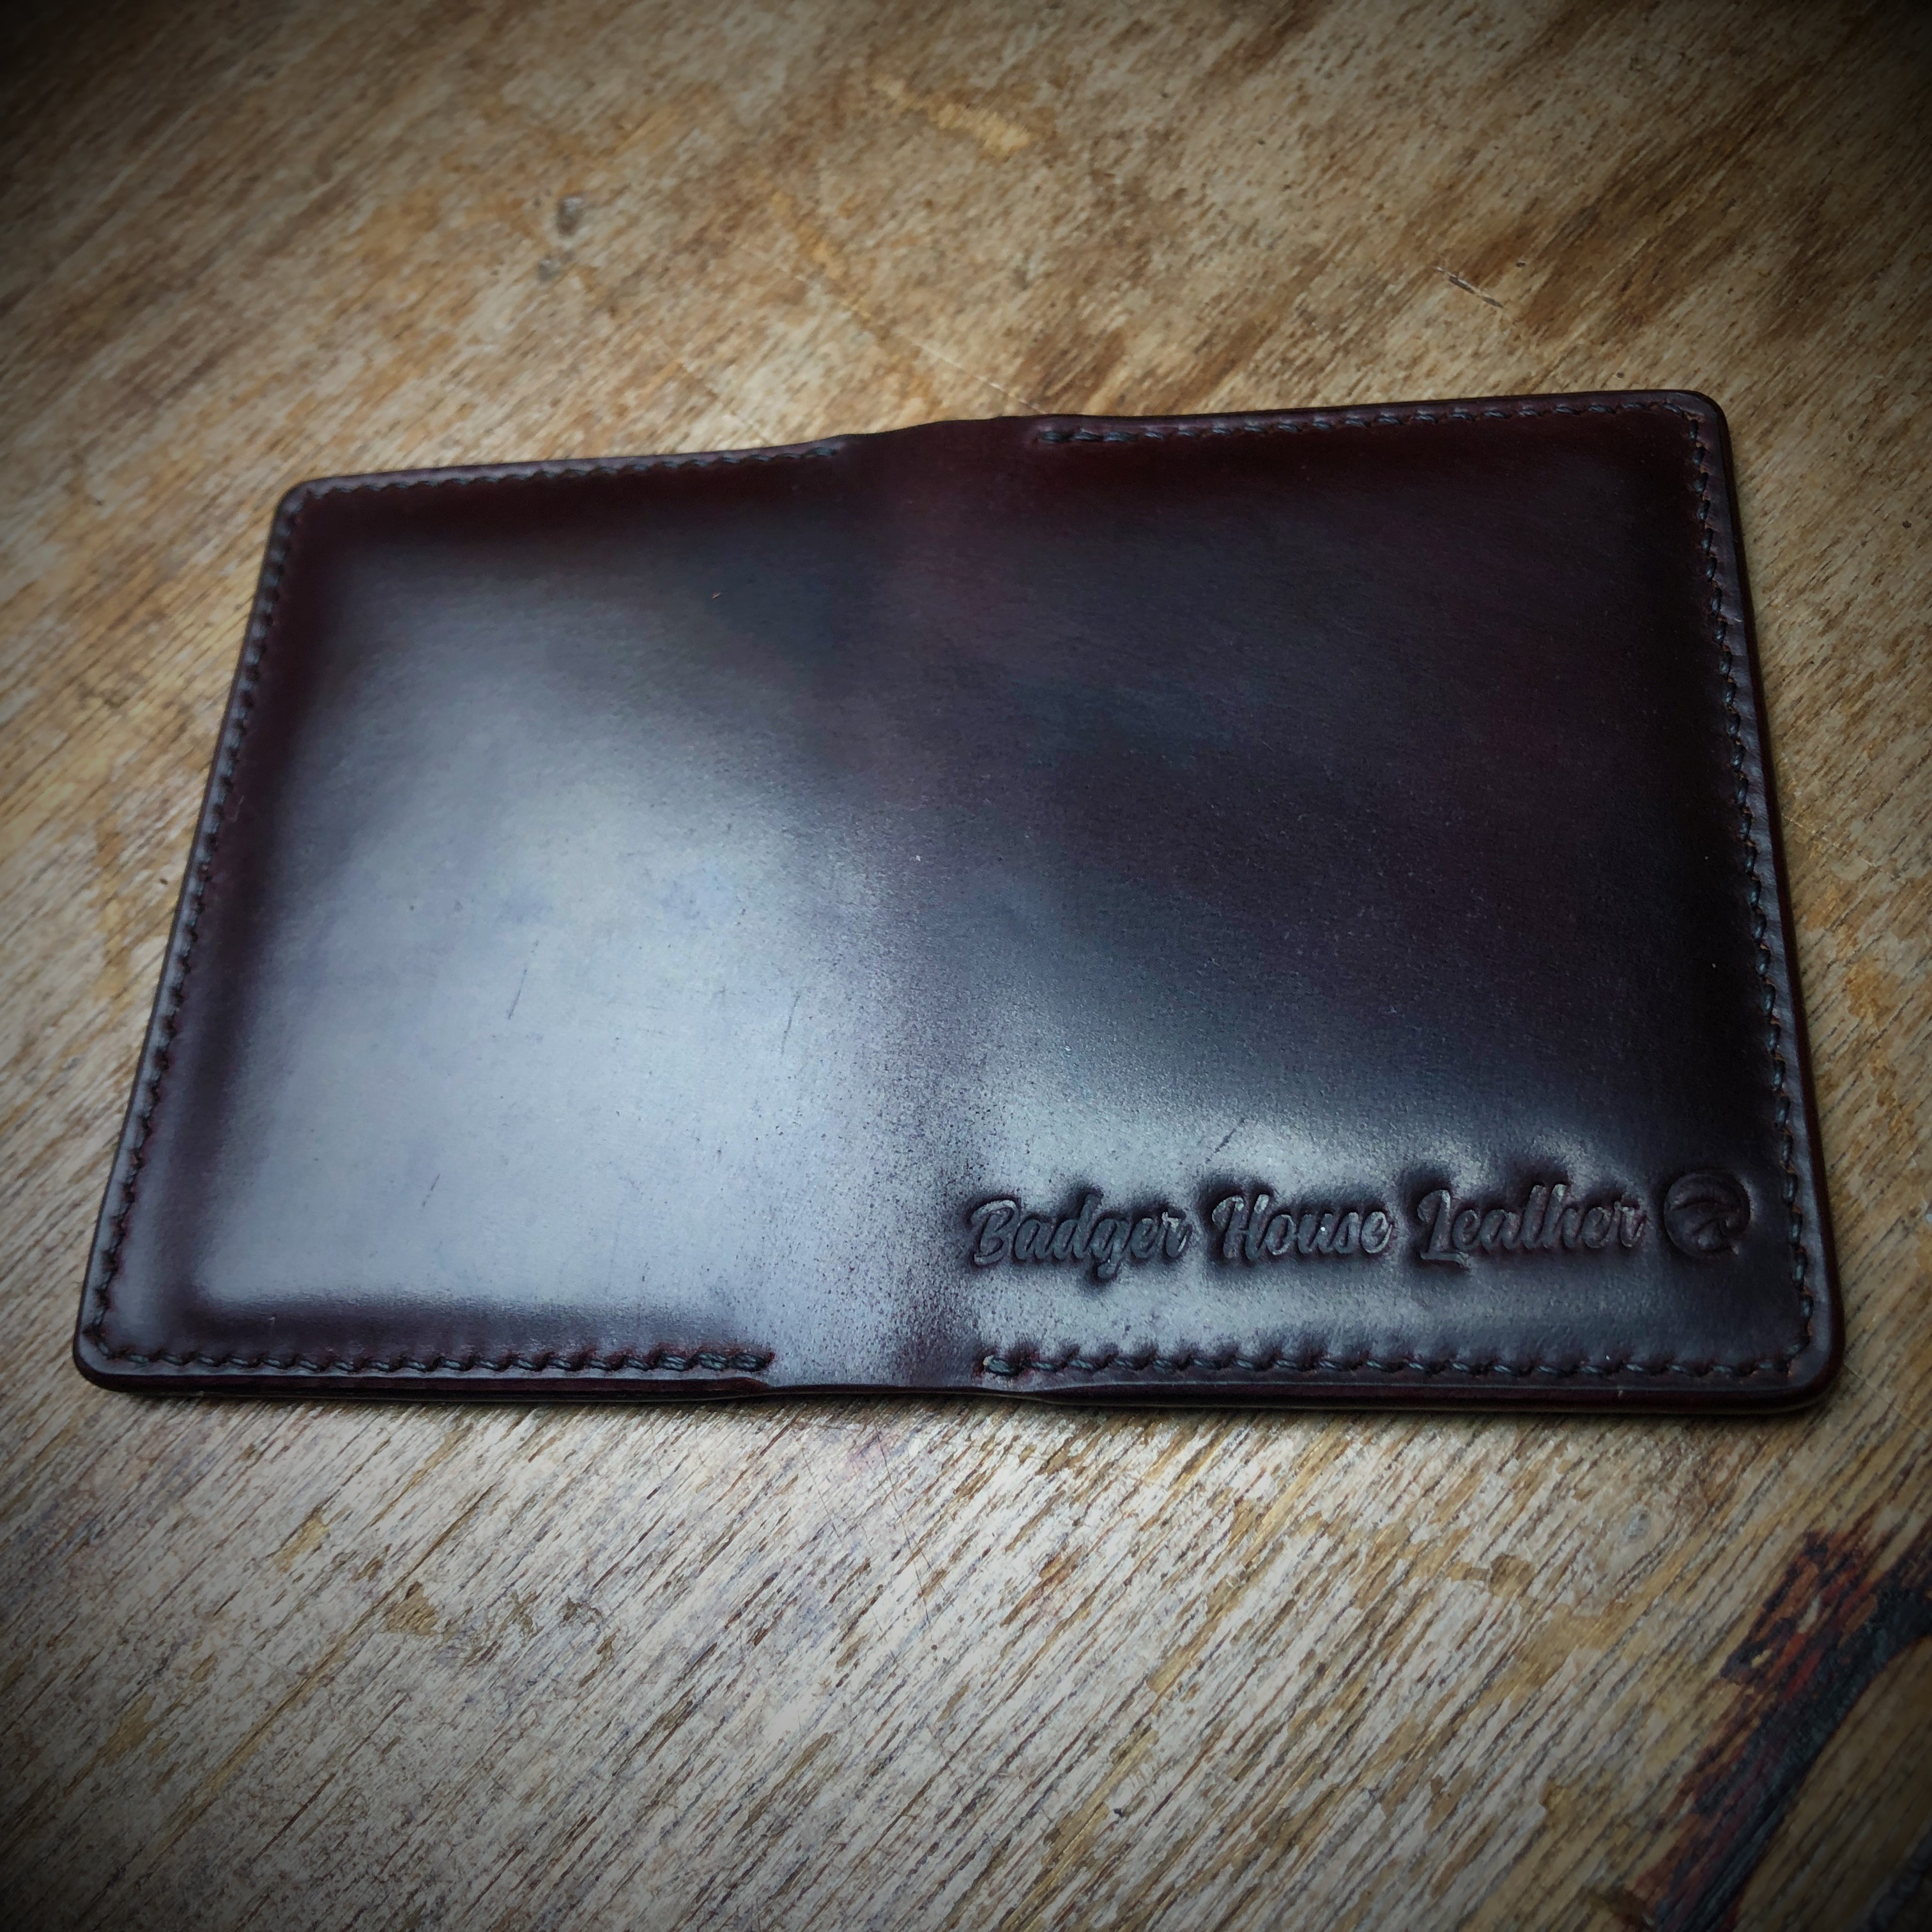 Shell cordovan bi-fold wallet